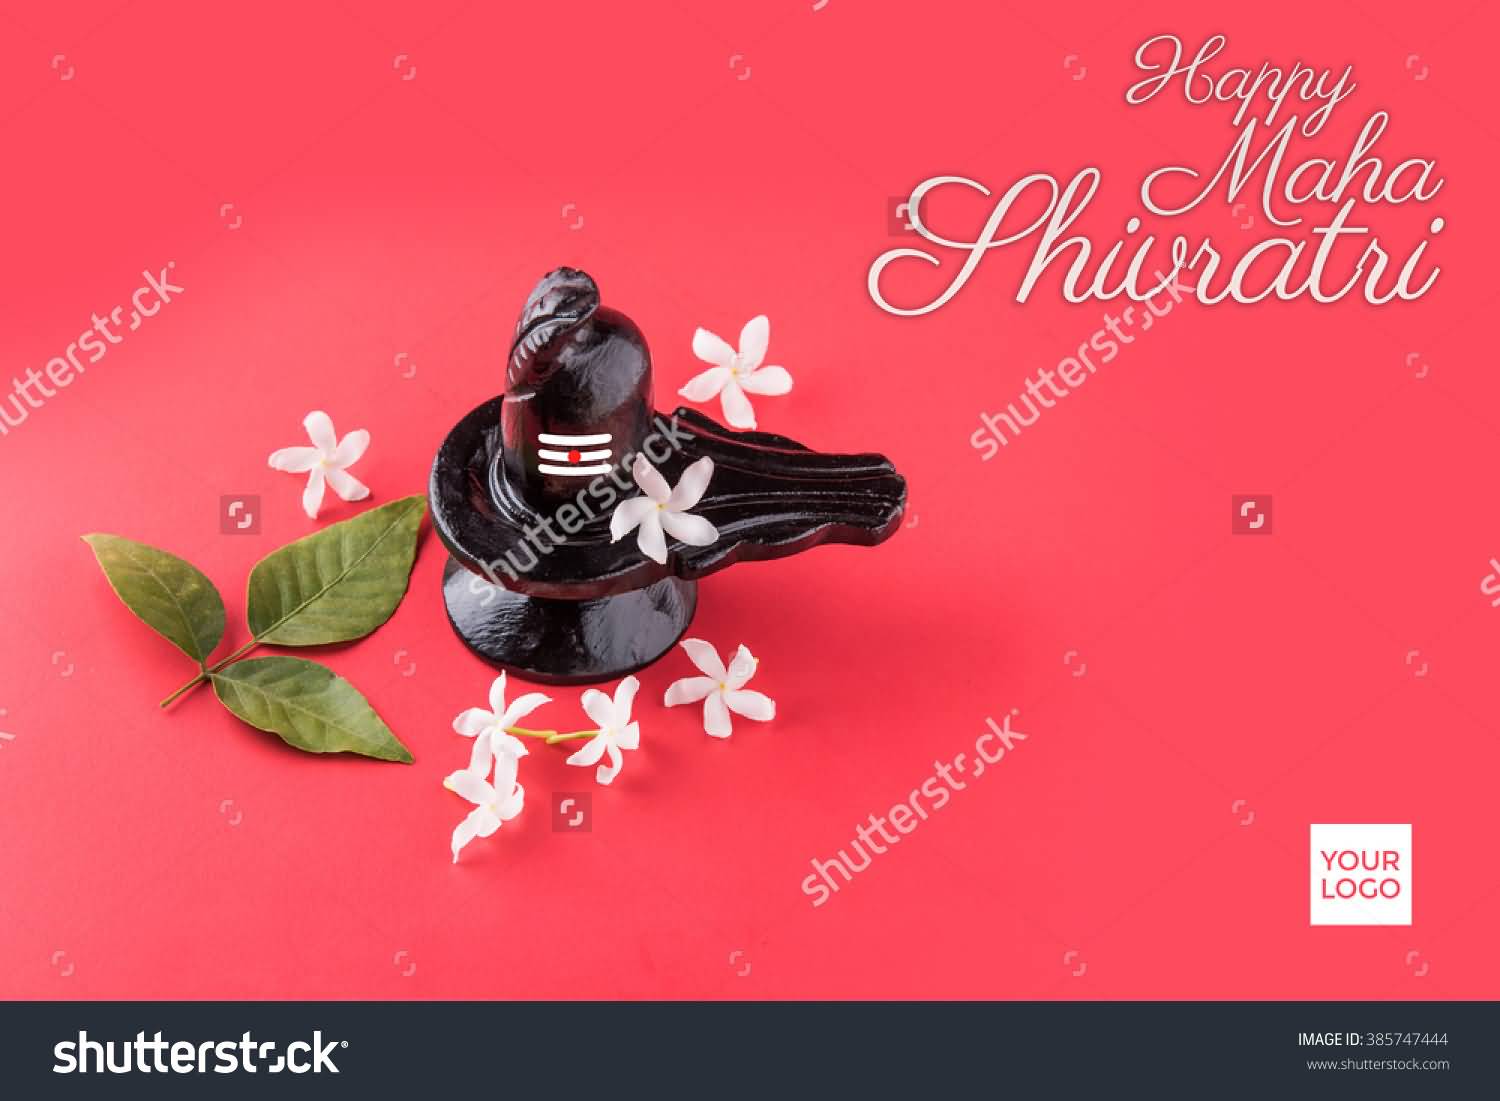 Happy Maha Shivaratri Shiv Linga Greeting Card